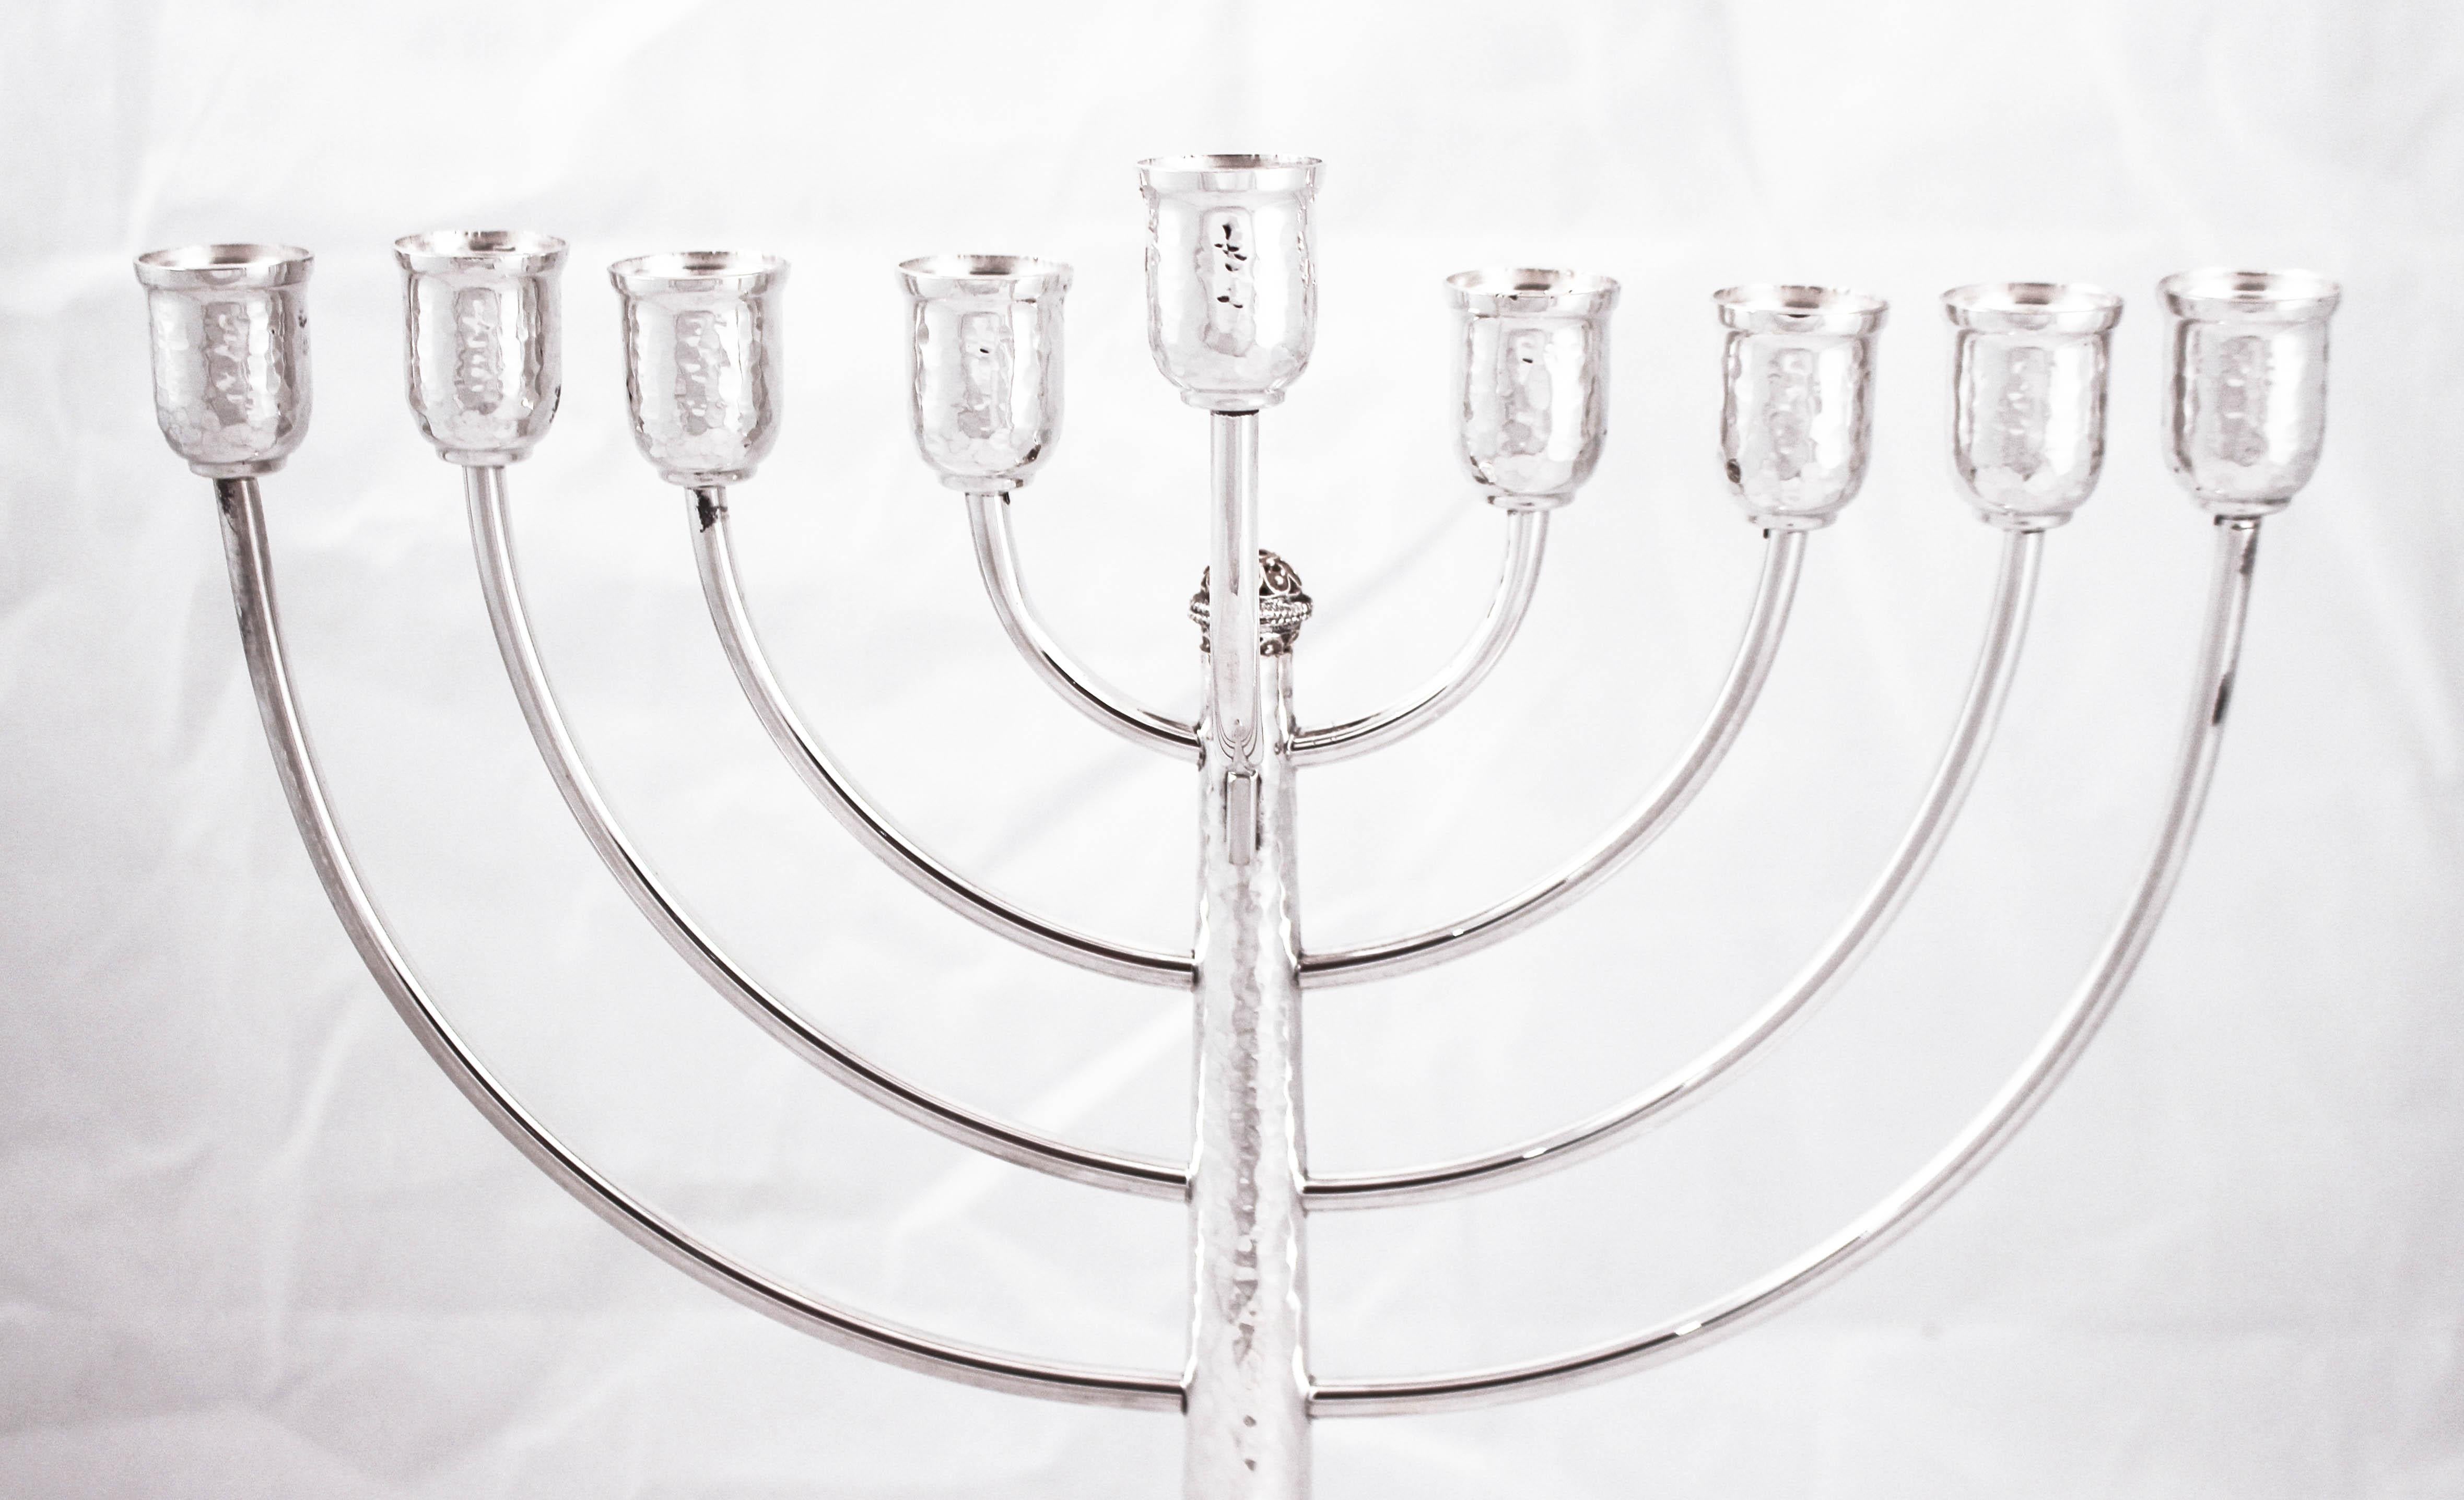 Nous sommes ravis de vous proposer cette ménorah en argent sterling fabriquée en Israël. La fête des lumières, comme on l'appelle souvent à Hanoukka, est commentée par l'allumage de la ménorah à chacune des huit nuits de la fête. Quelle belle façon